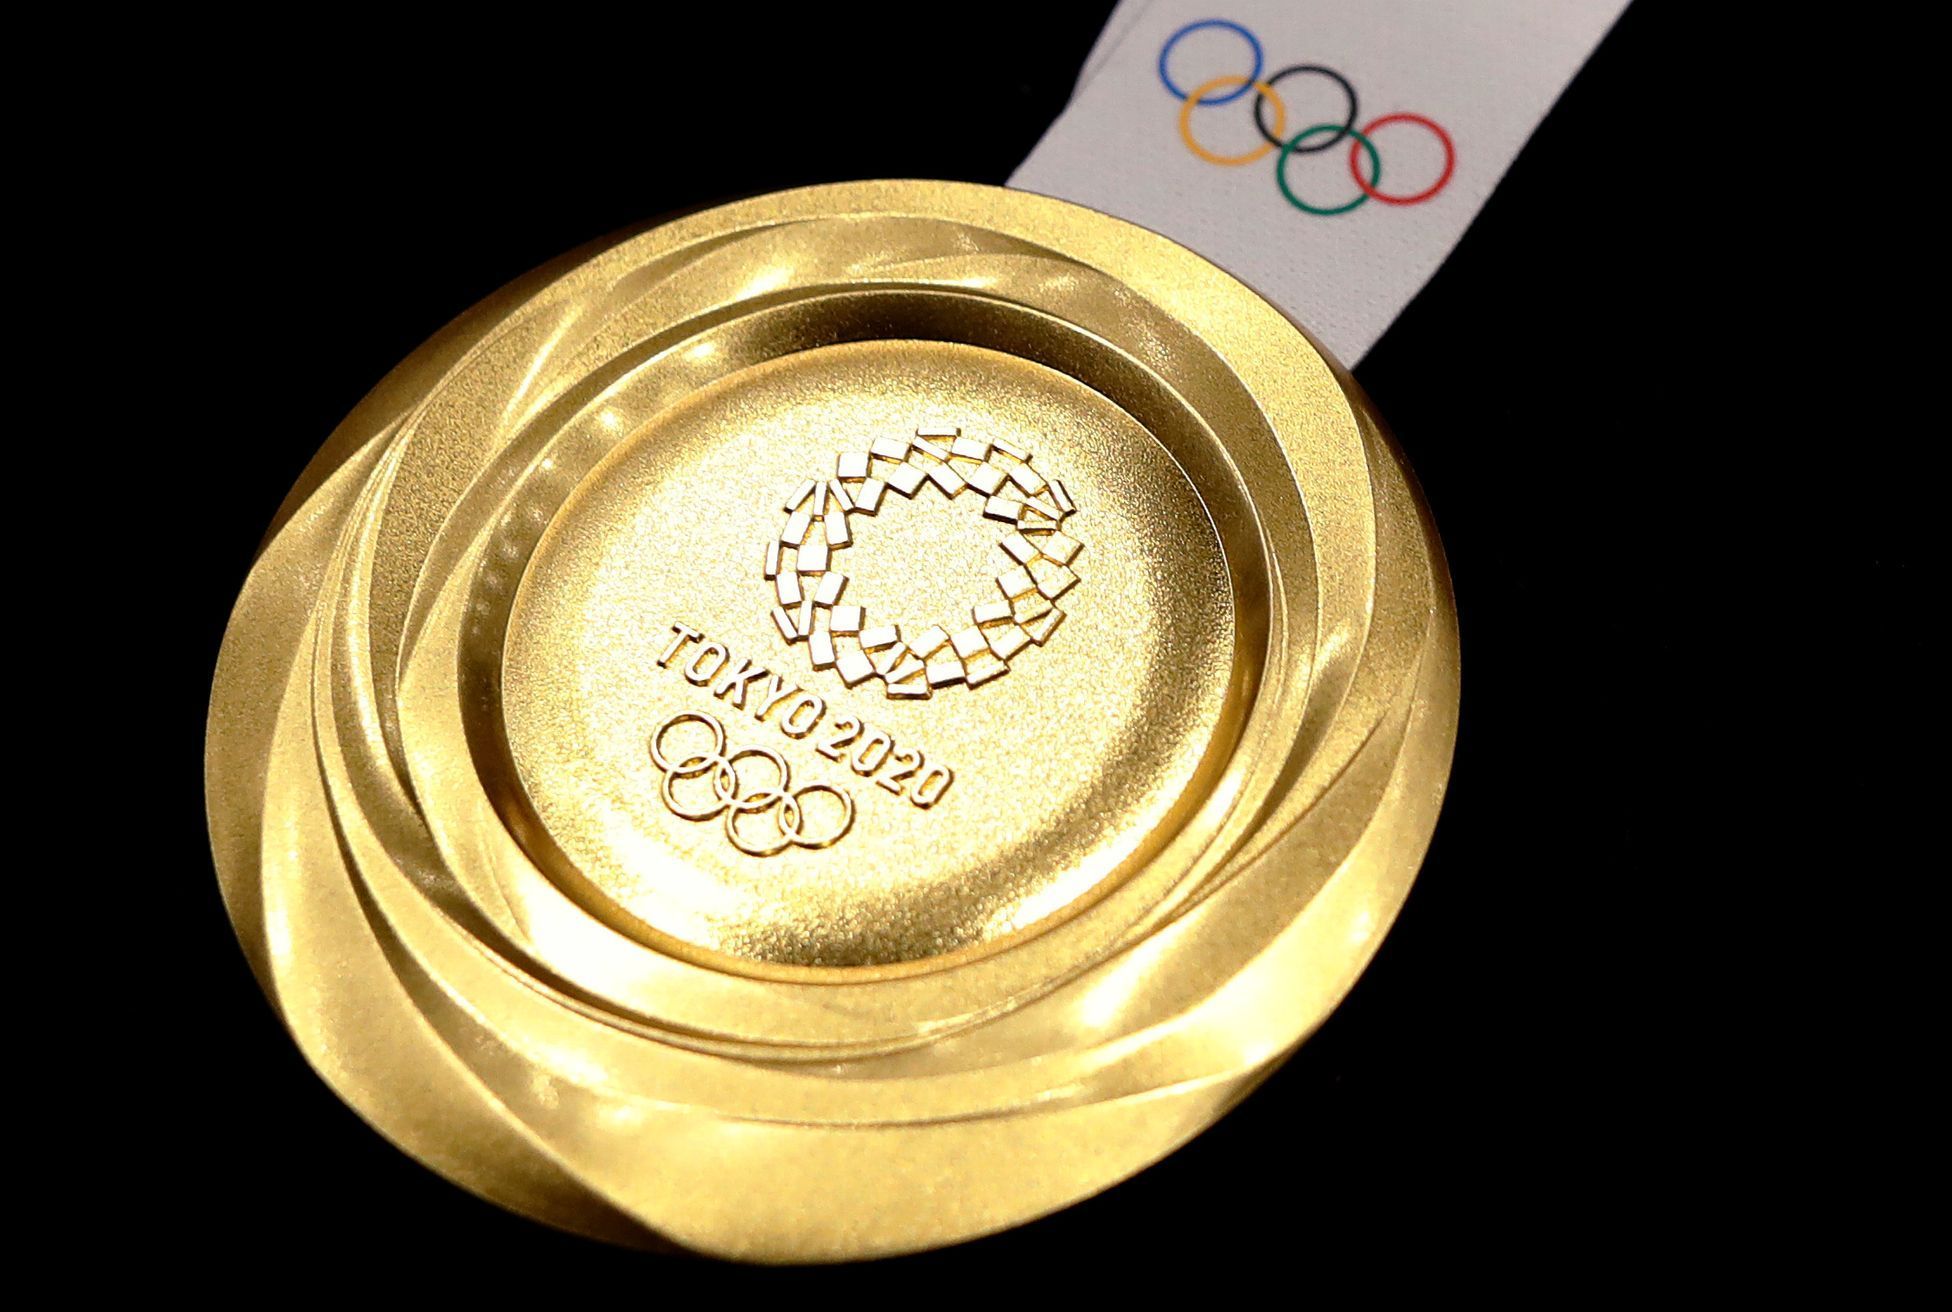 Olympijské medaile pro Tokio 2020